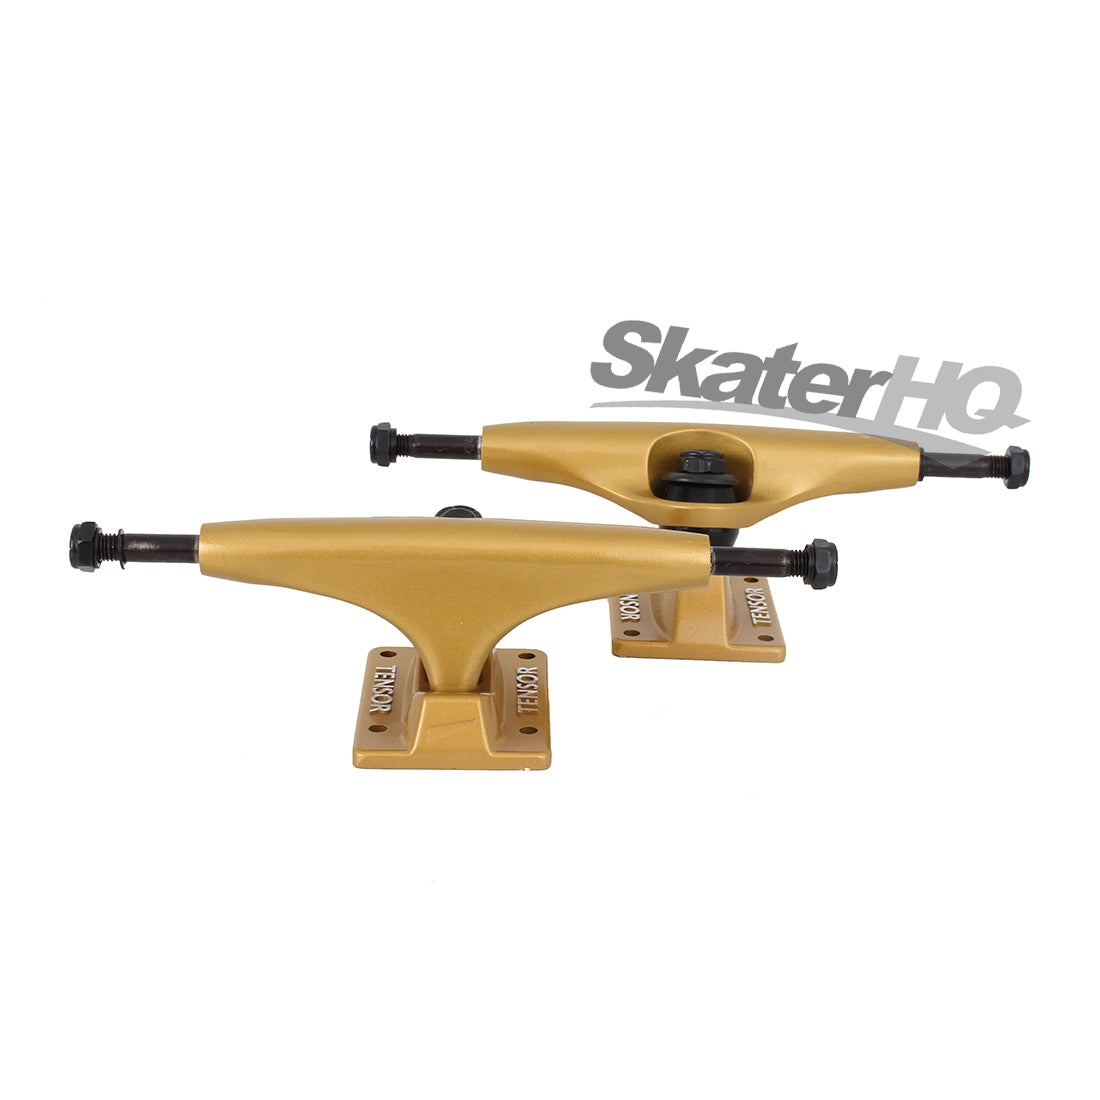 Tensor Alloys 5.25 Pair - Gold Skateboard Trucks